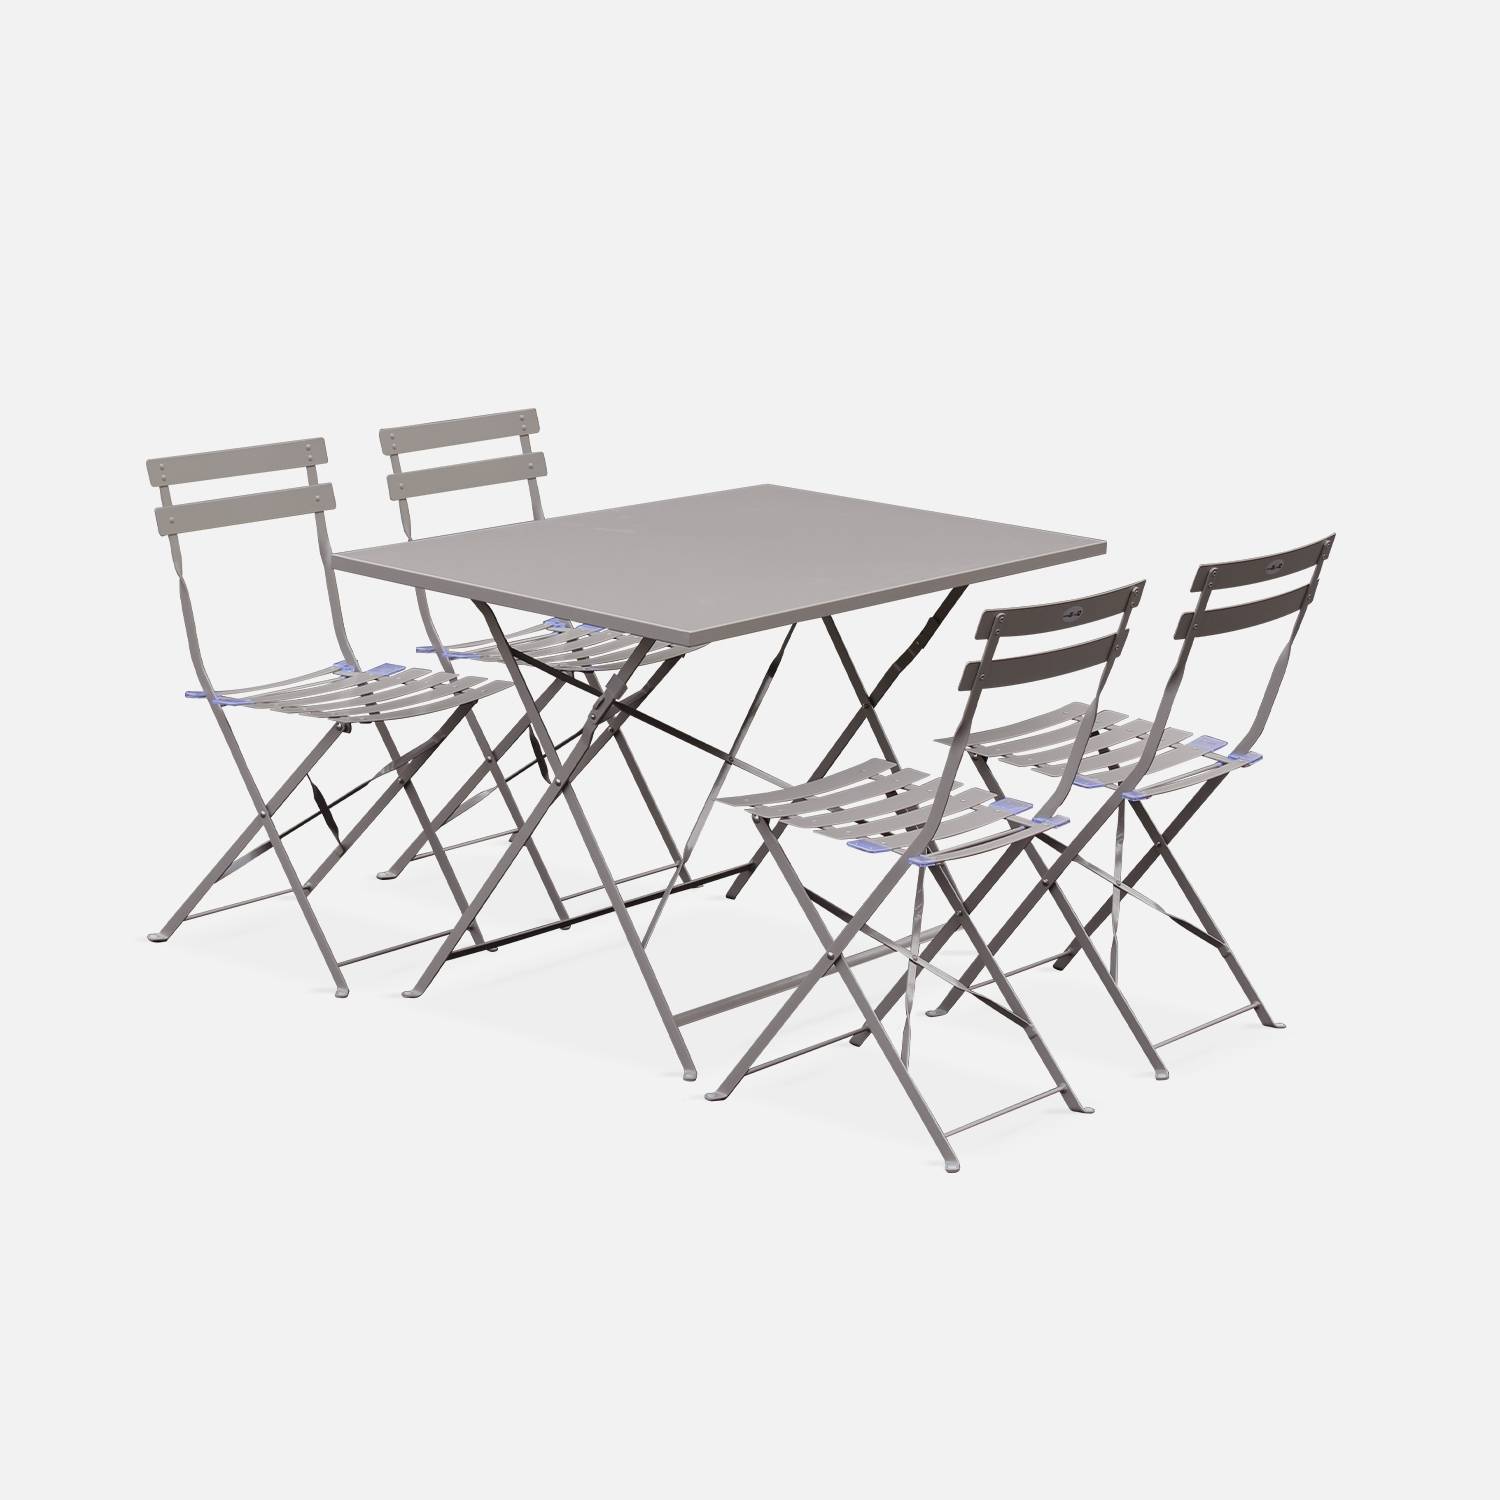 Tavolo da giardino, bar bistrot, pieghevole, modello: Emilia colore: Grigio bruno, 4 sedie pieghevoli, acciaio termolaccato | sweeek